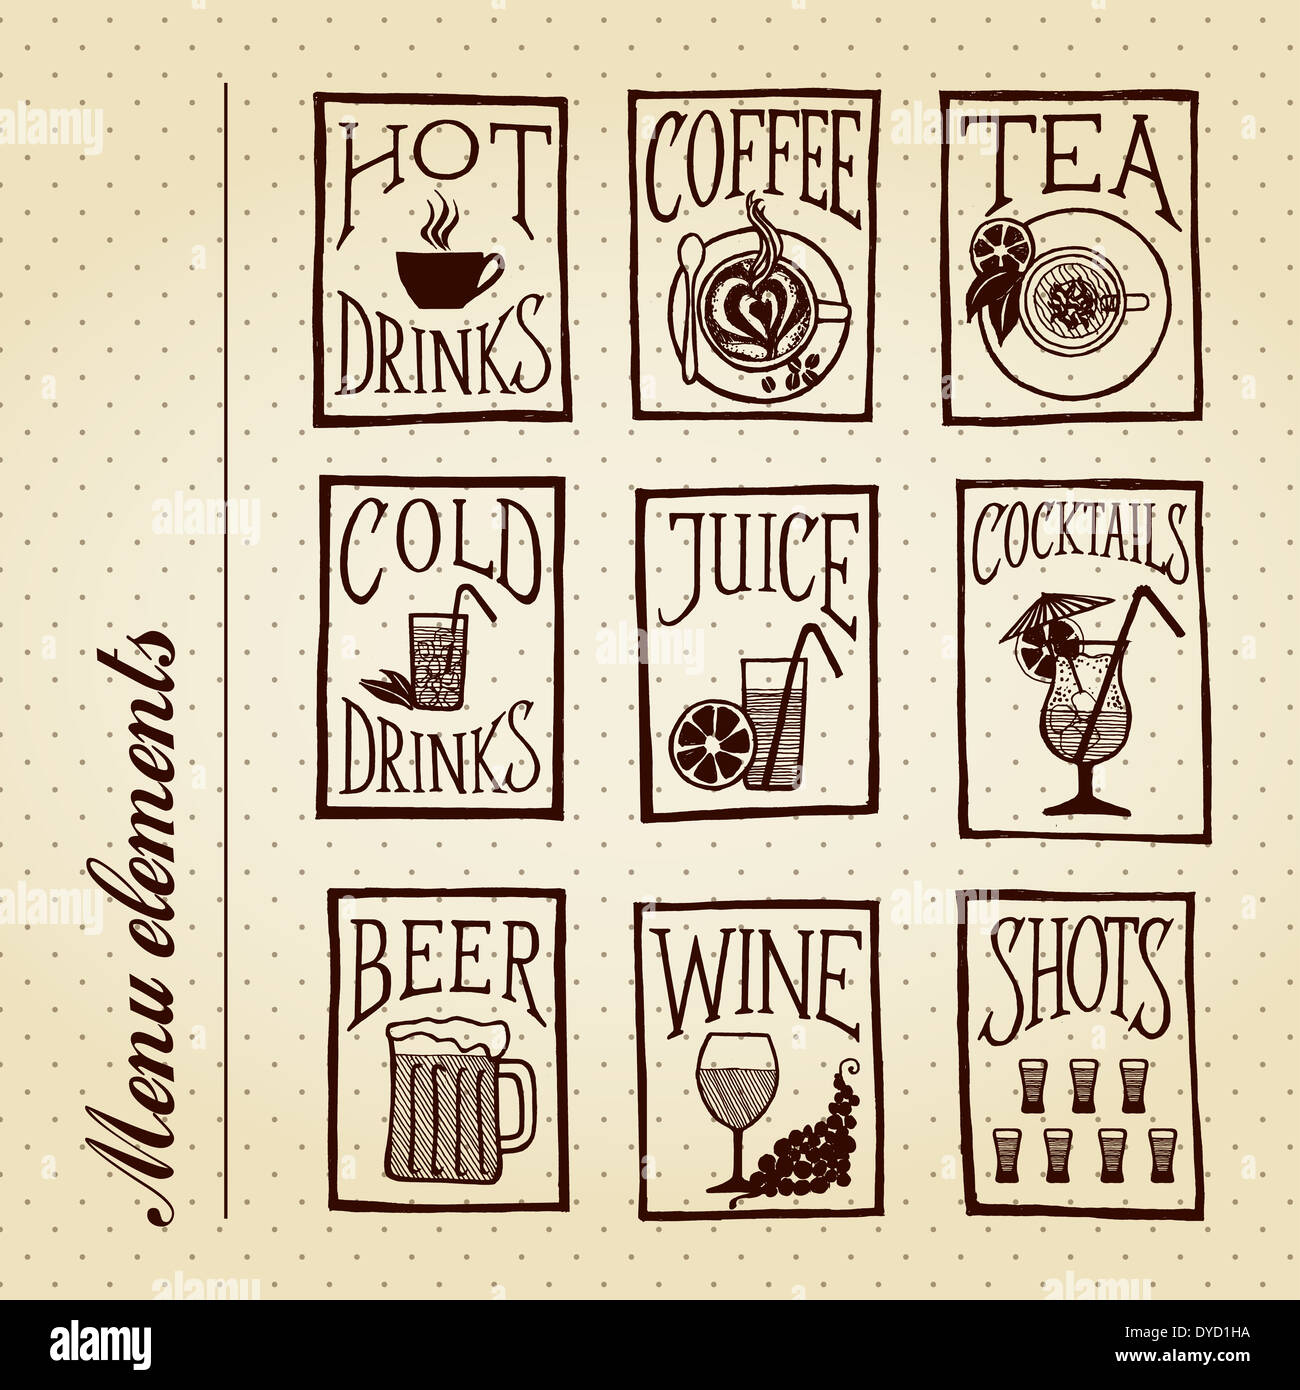 Menu di bevande - elementi in stile retrò disegnati a mano set di icone su sfondo vintage Foto Stock